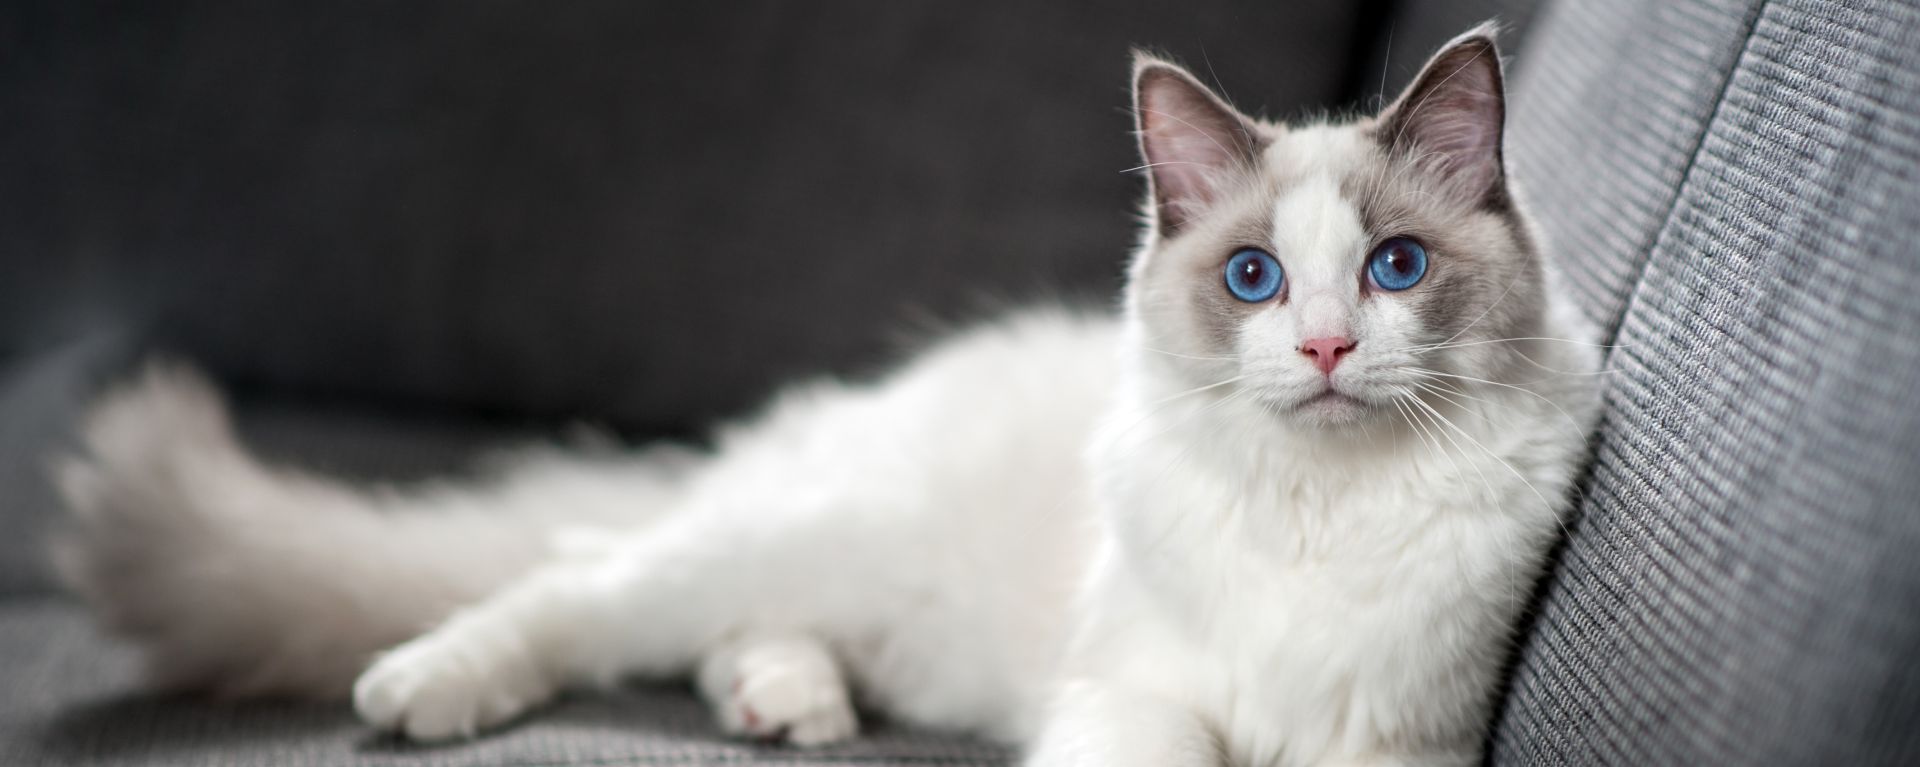 Токсоплазмоз у кошек - симптомы, лечение, как передаётся человеку